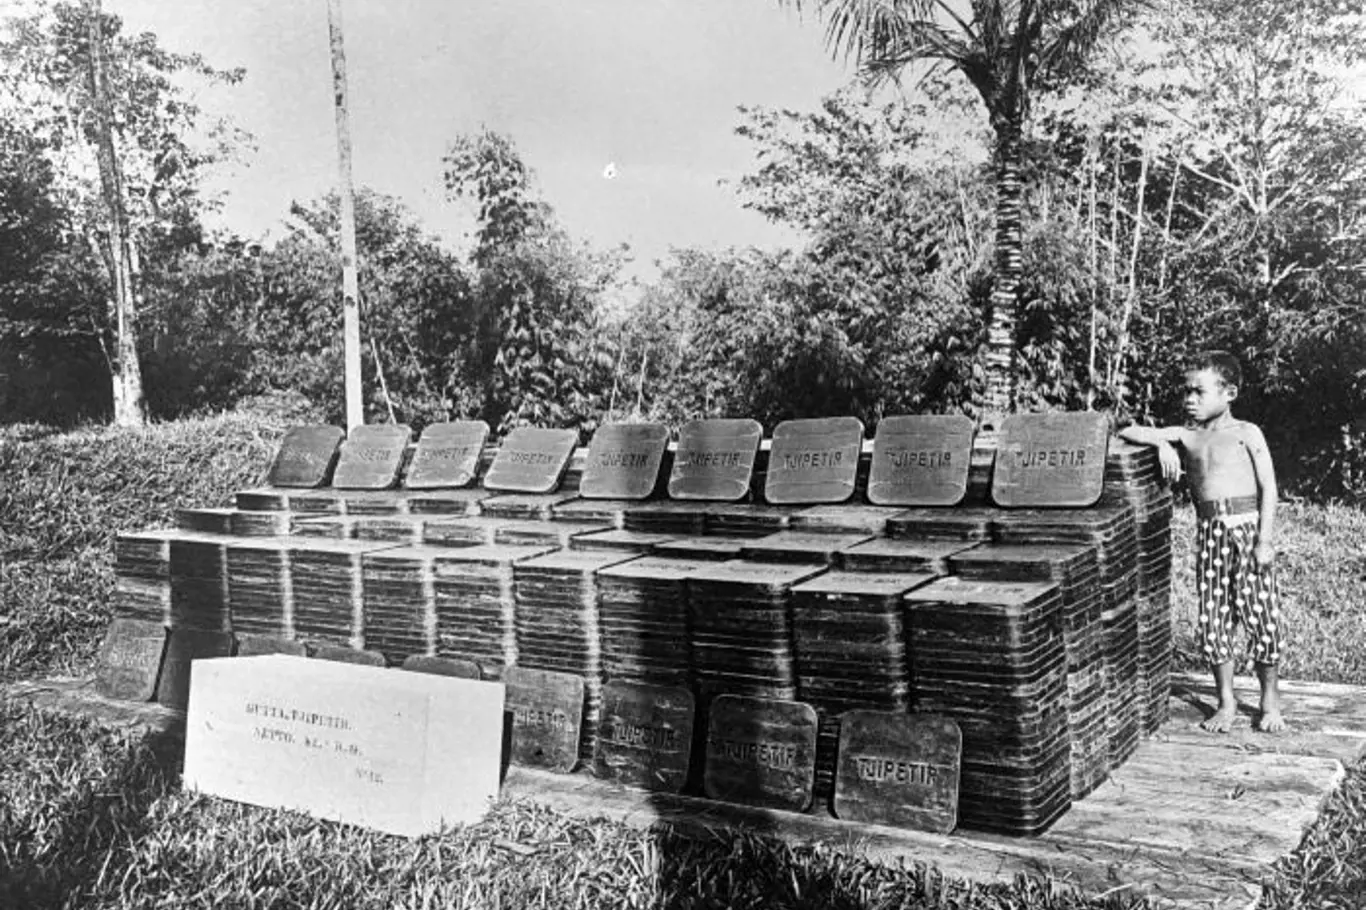 Bloky pryžového výrobku s viditelnou značkou TJIPETIR. Zdroj: TIPIRIPETER, s. r. o: Tropenmuseum